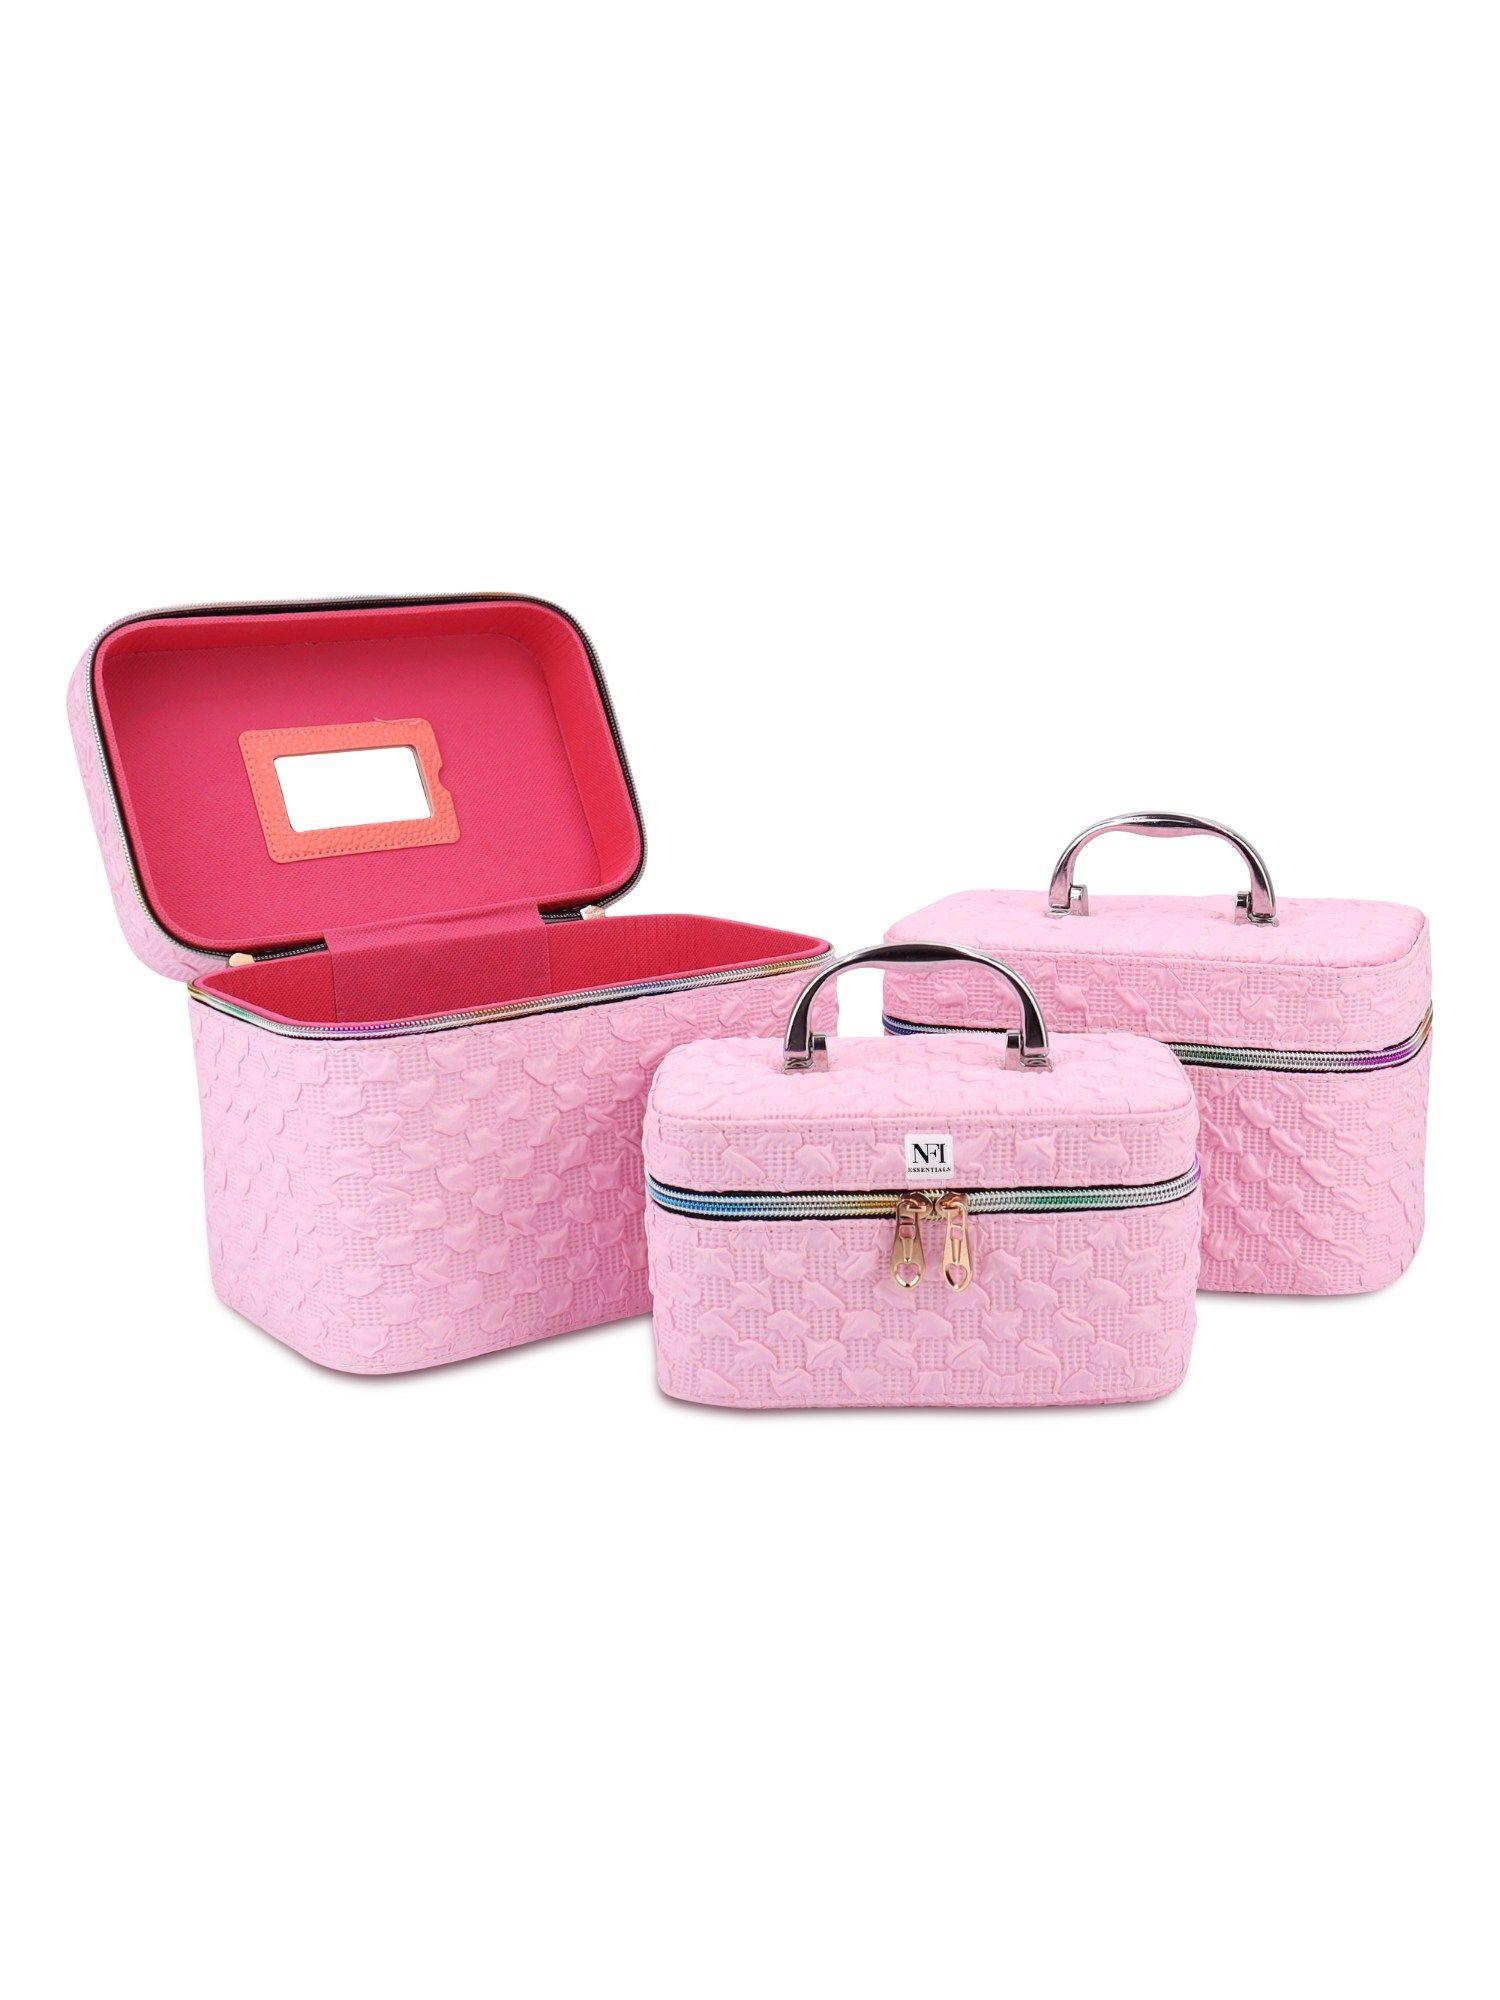 pink makeup box (set of 3) (l)